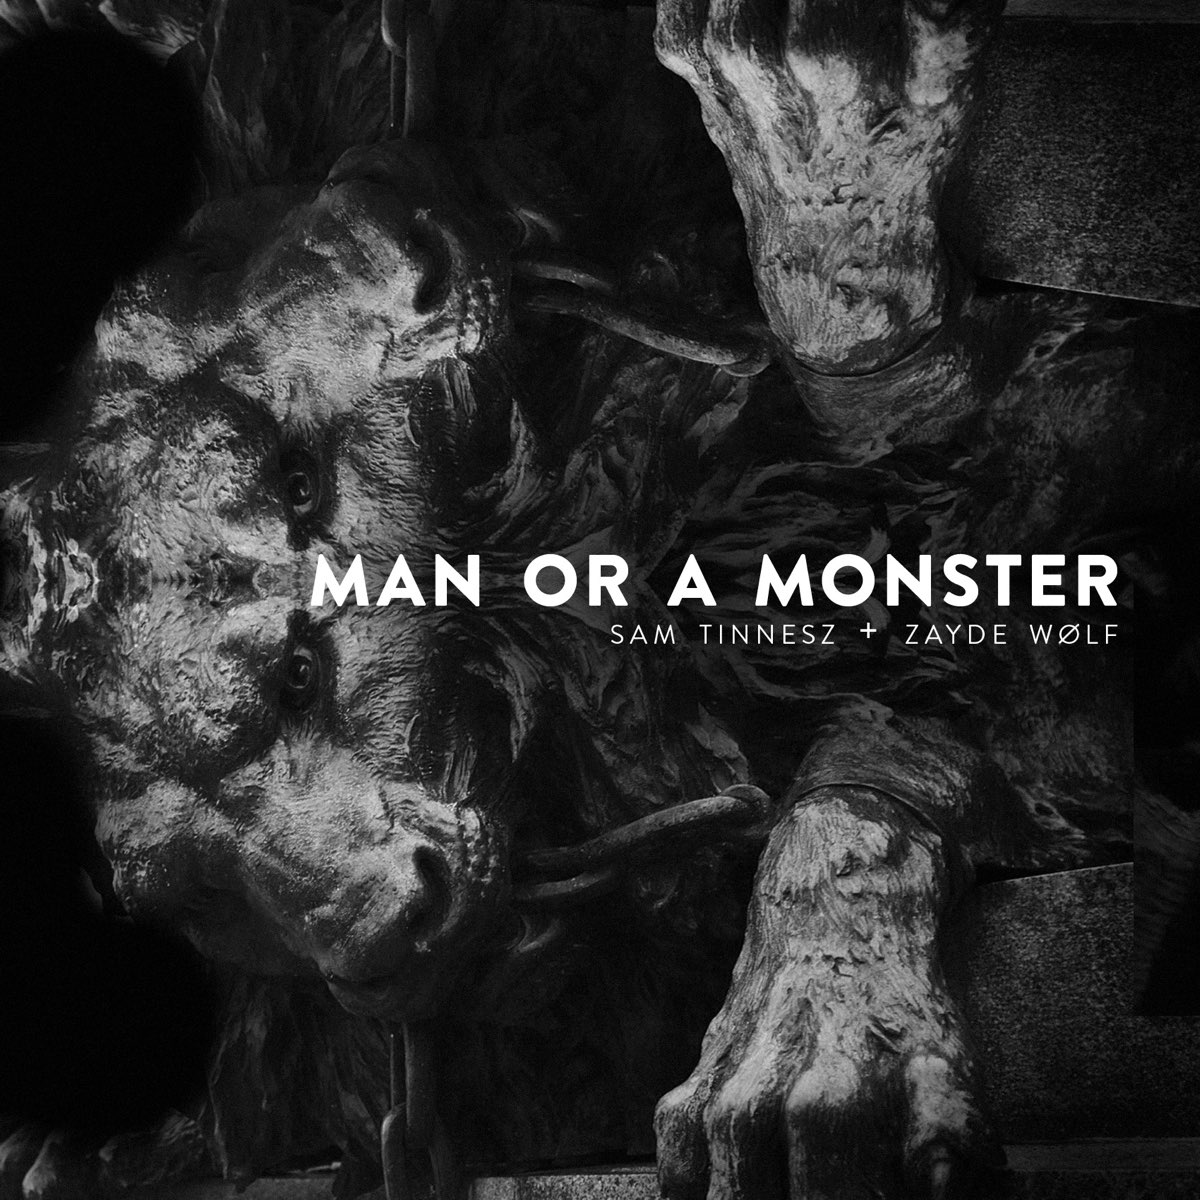 Man or monster. Sam Tinnesz man or a Monster. Man or a Monster Sam Tinnesz feat. Zayde w LF. Man or a Monster Sam Tinnesz текст. Enemy Sam Tinnesz.